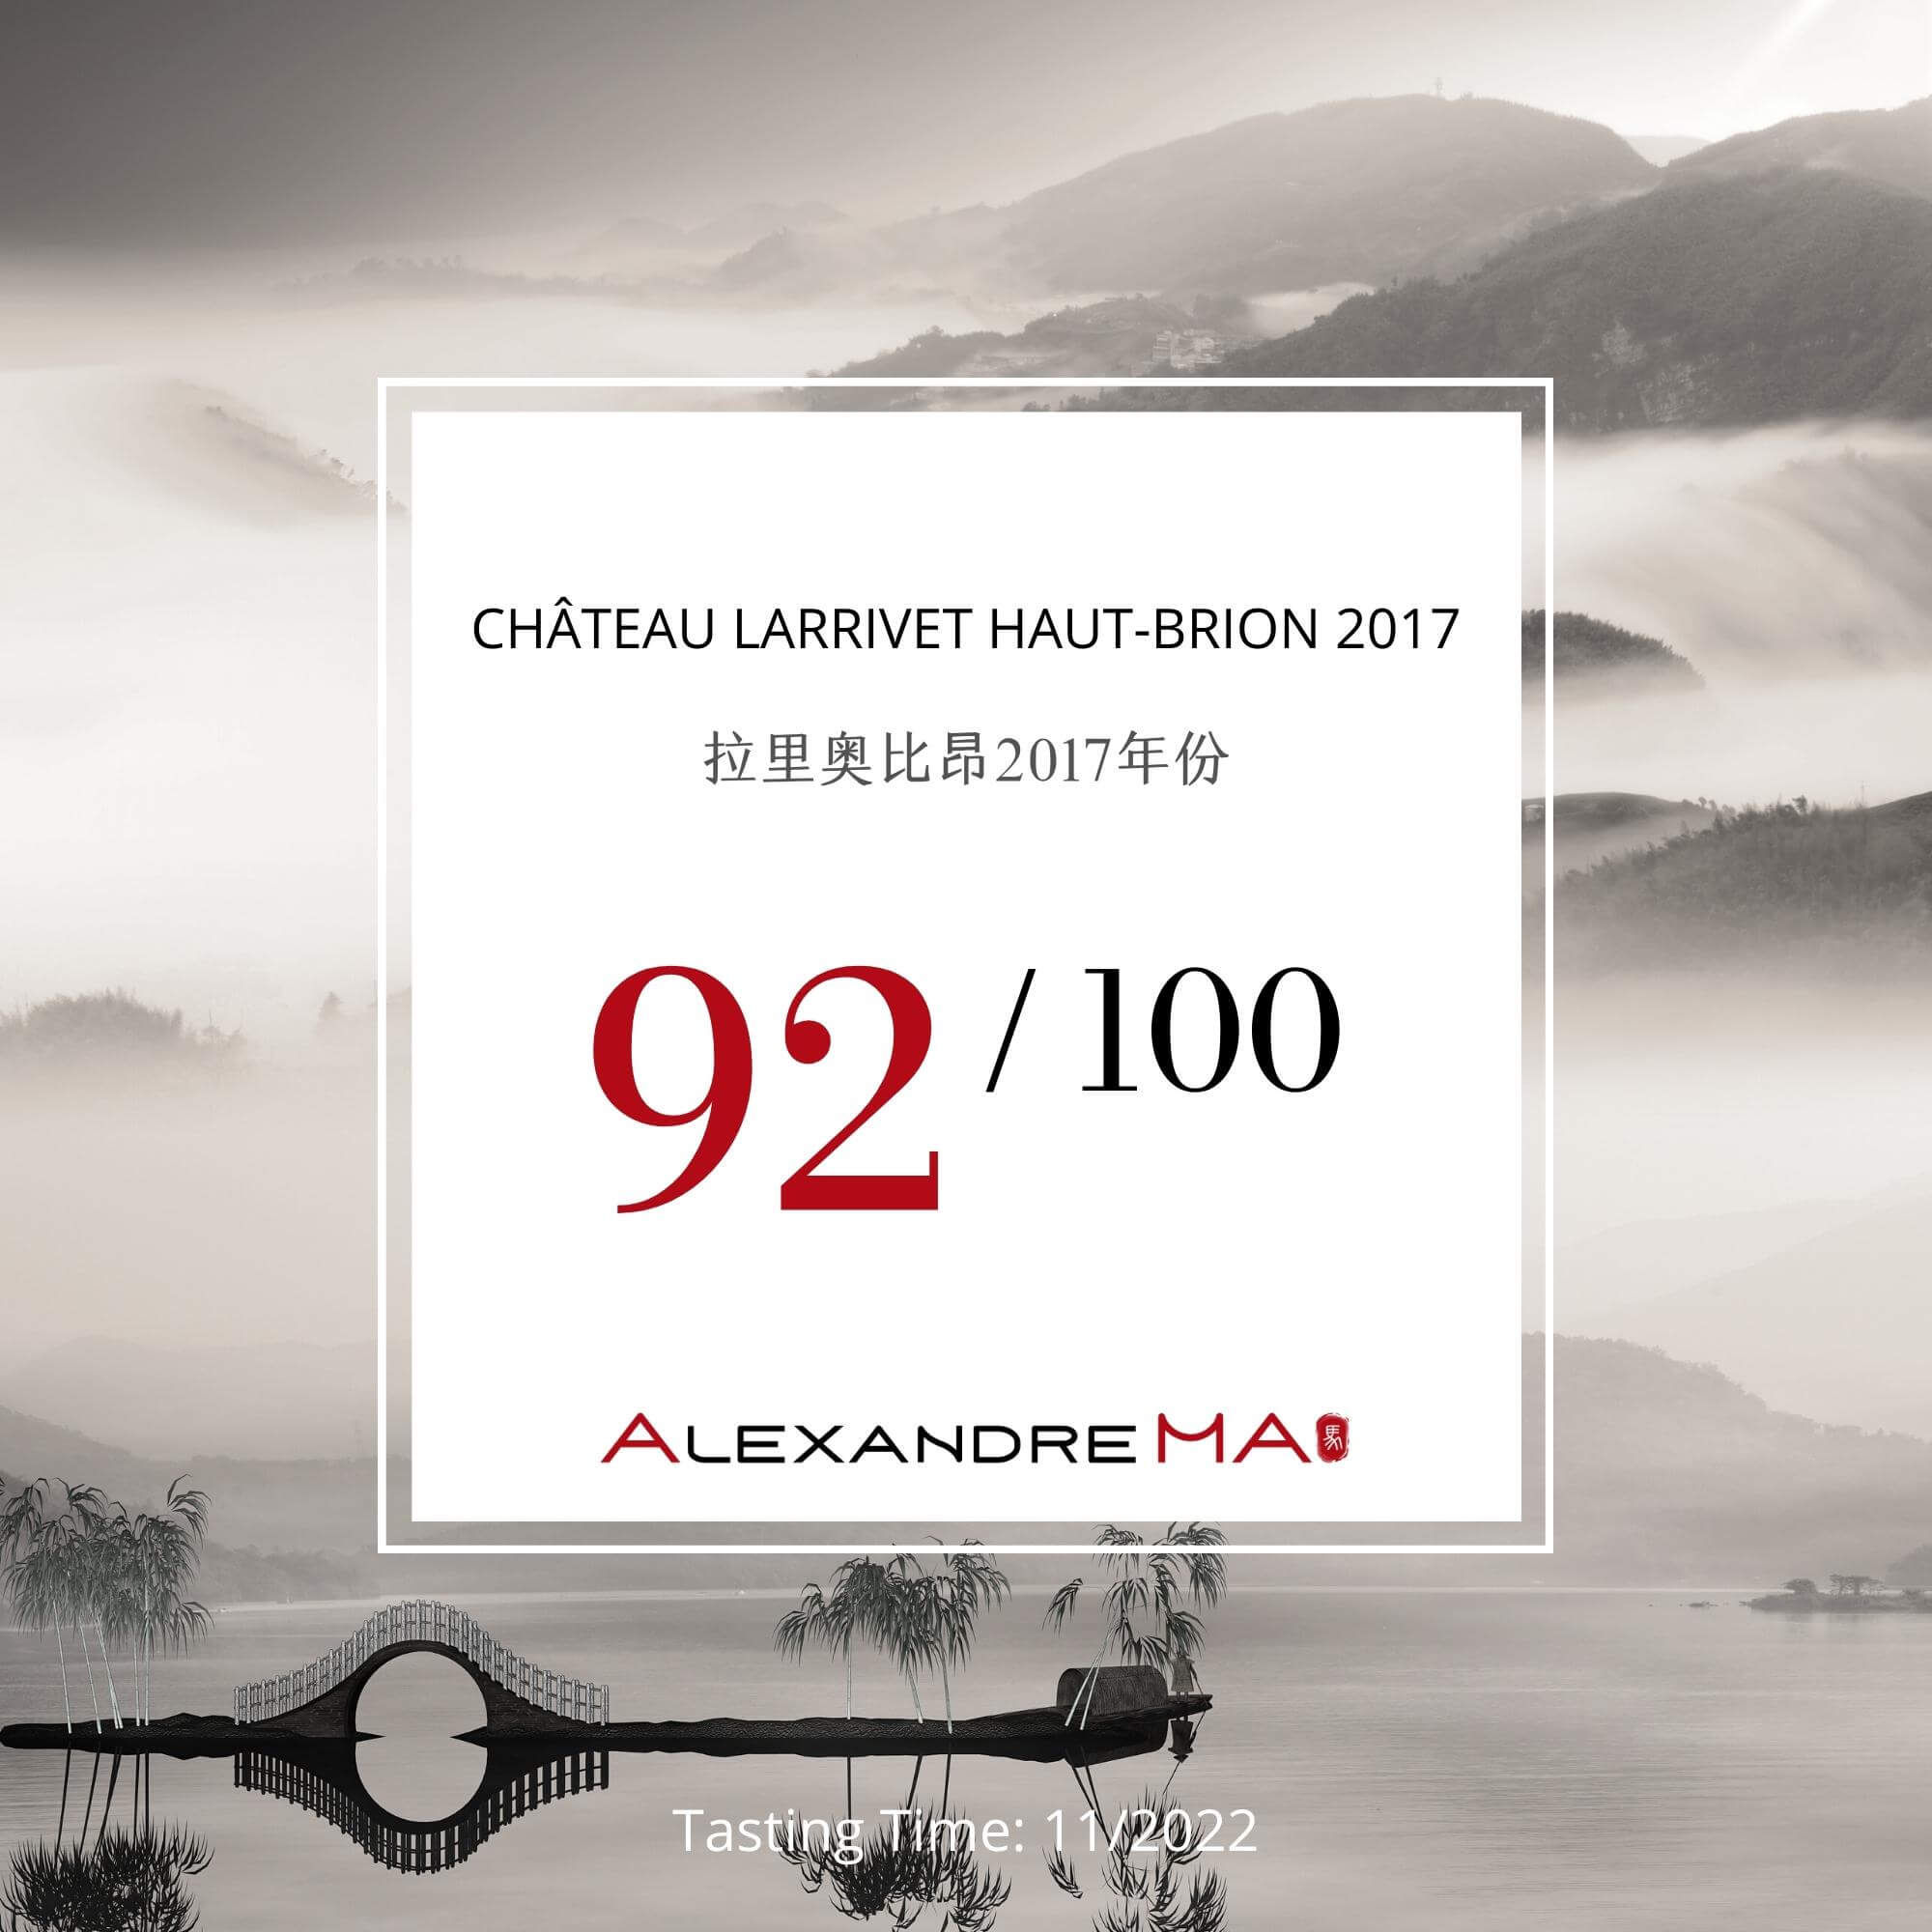 Château Larrivet Haut-Brion 2017 - Alexandre MA